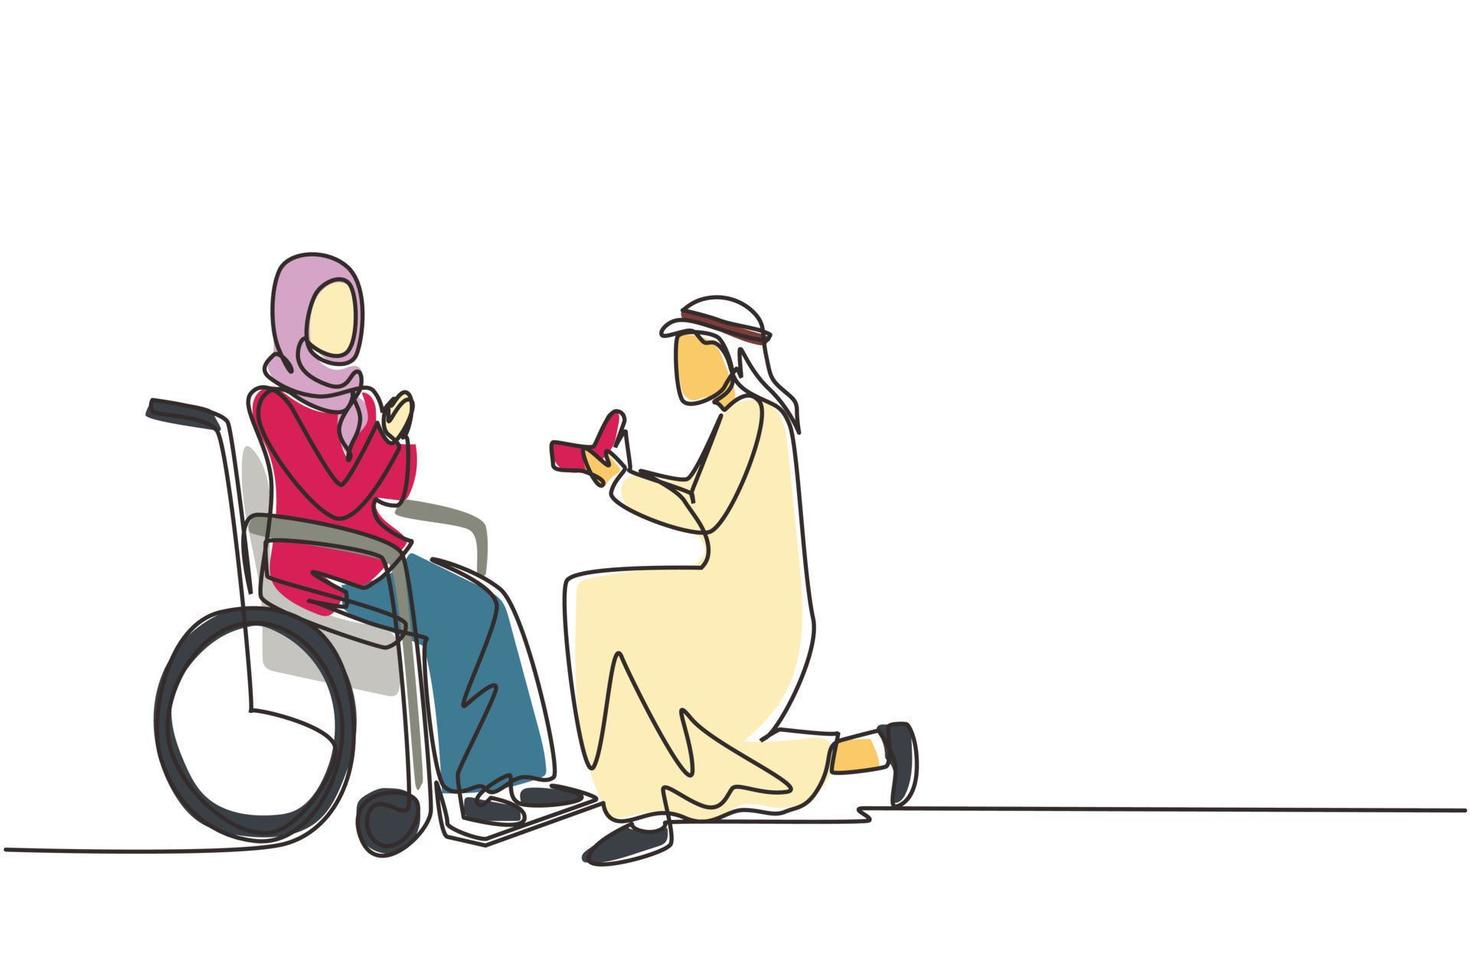 disegno a linea continua singola uomo arabo in ginocchio con anello di fidanzamento in mano davanti a donna disabile seduta su sedia a rotelle, relazioni amorose, matrimonio di persona. vettore di disegno di una linea